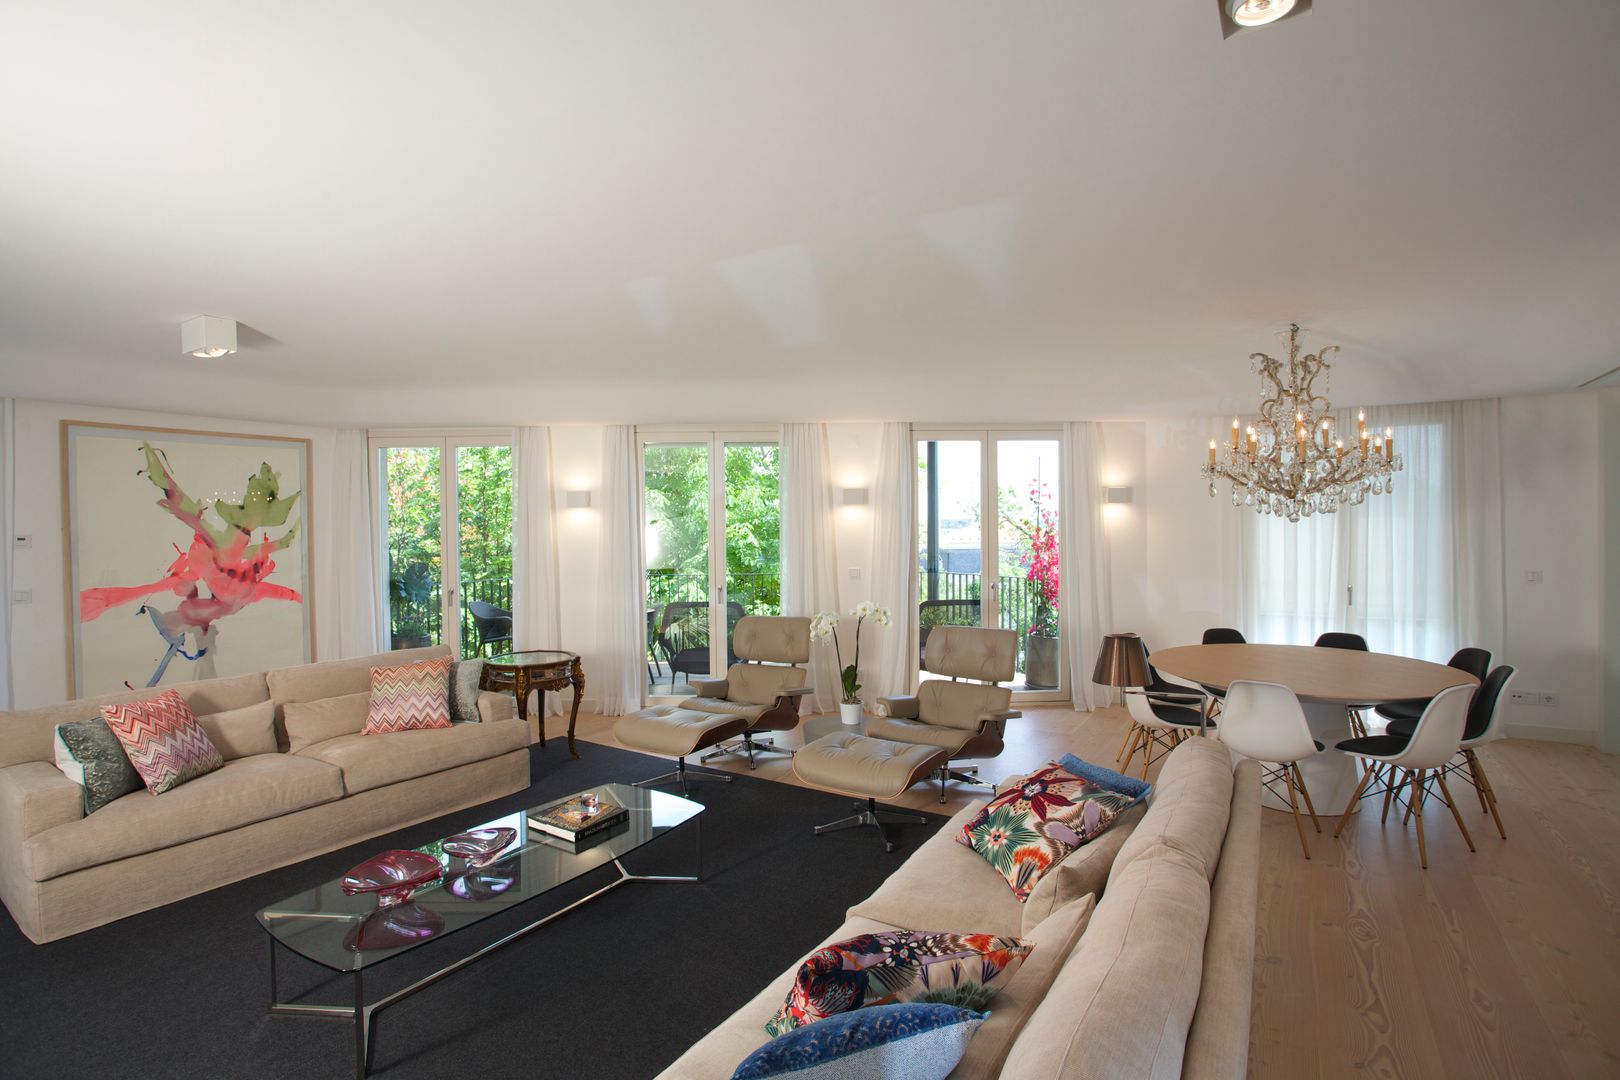 Uma atmosfera leve e colorida, Architect Your Home Architect Your Home Living room